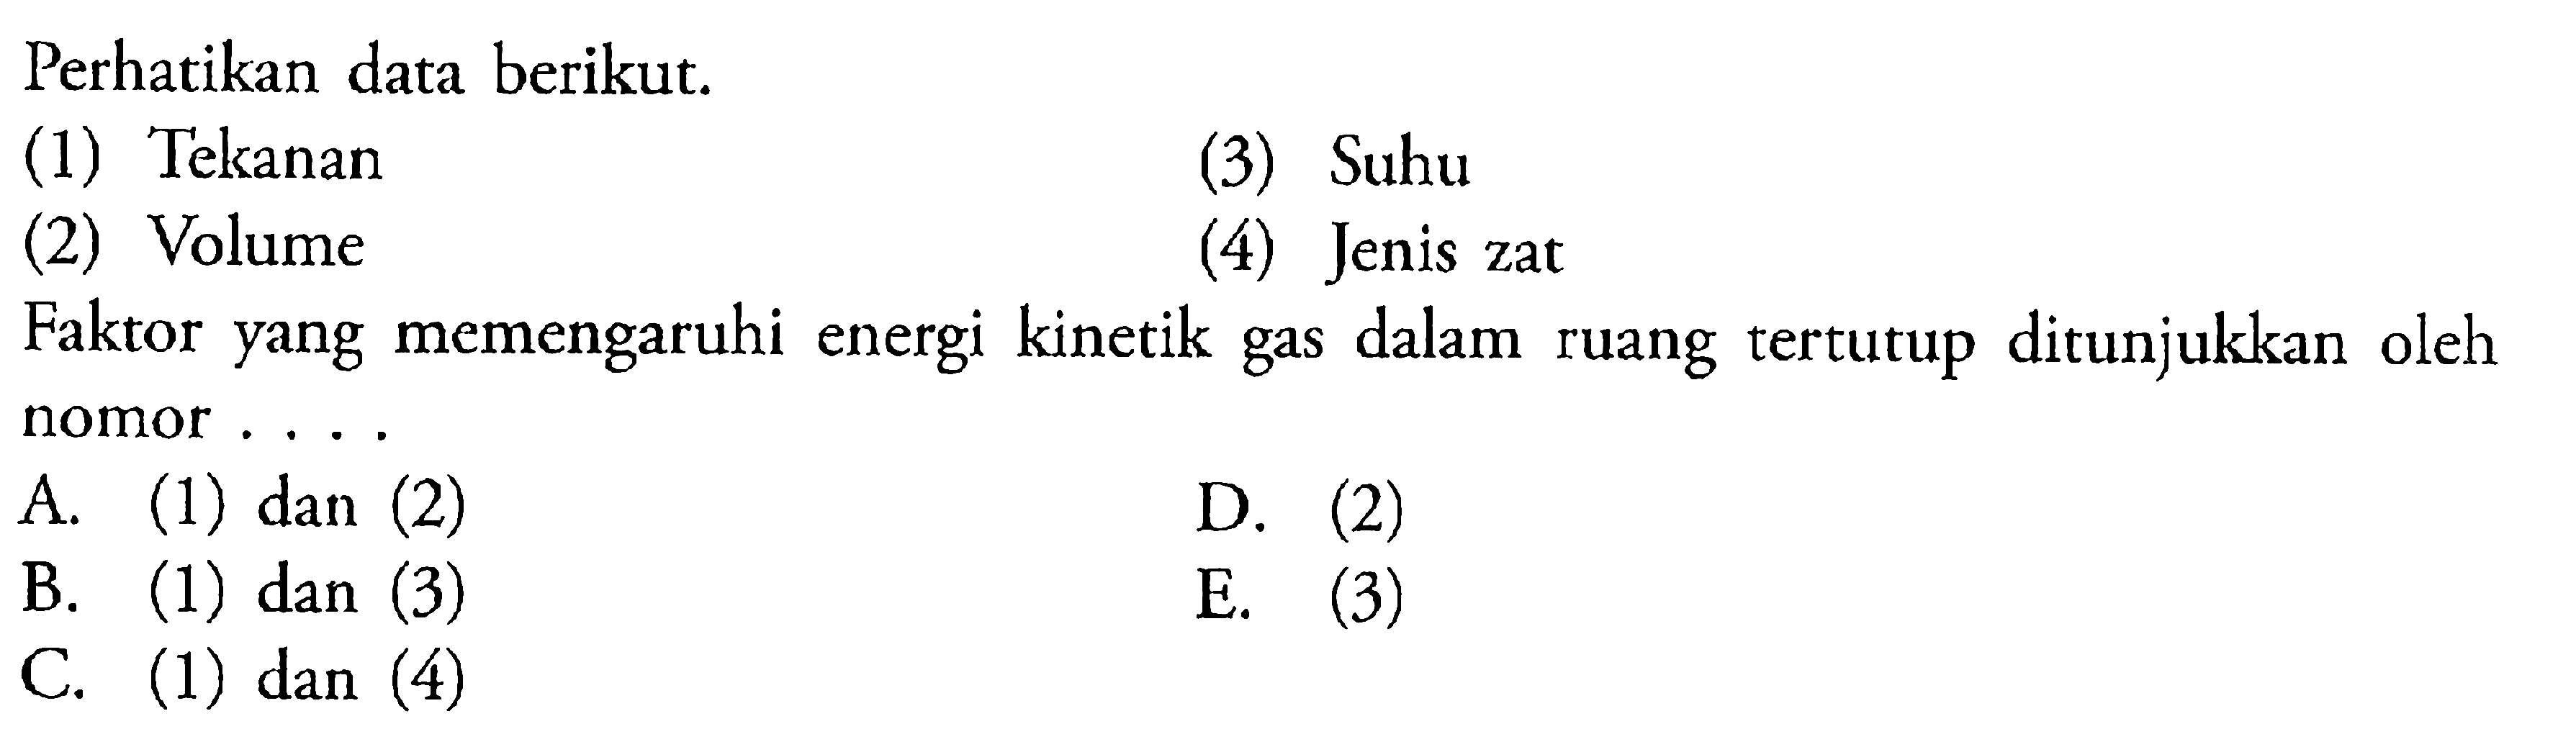 Perhatikan data berikut: (1) Tekanan (3) Suhu (2) Volume (4) Jenis zat Faktor yang memengaruhi energi kinetik gas dalam ruang tertutup ditunjukkan oleh nomor